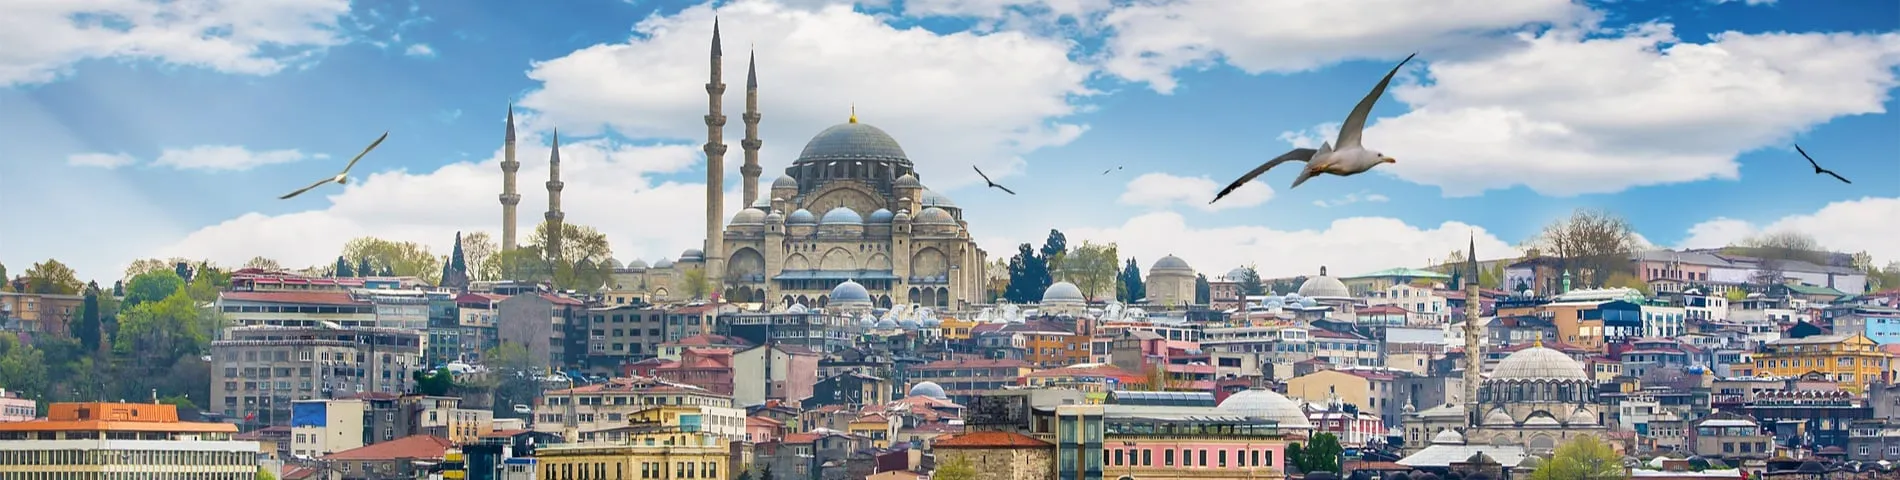 Стамбул - 